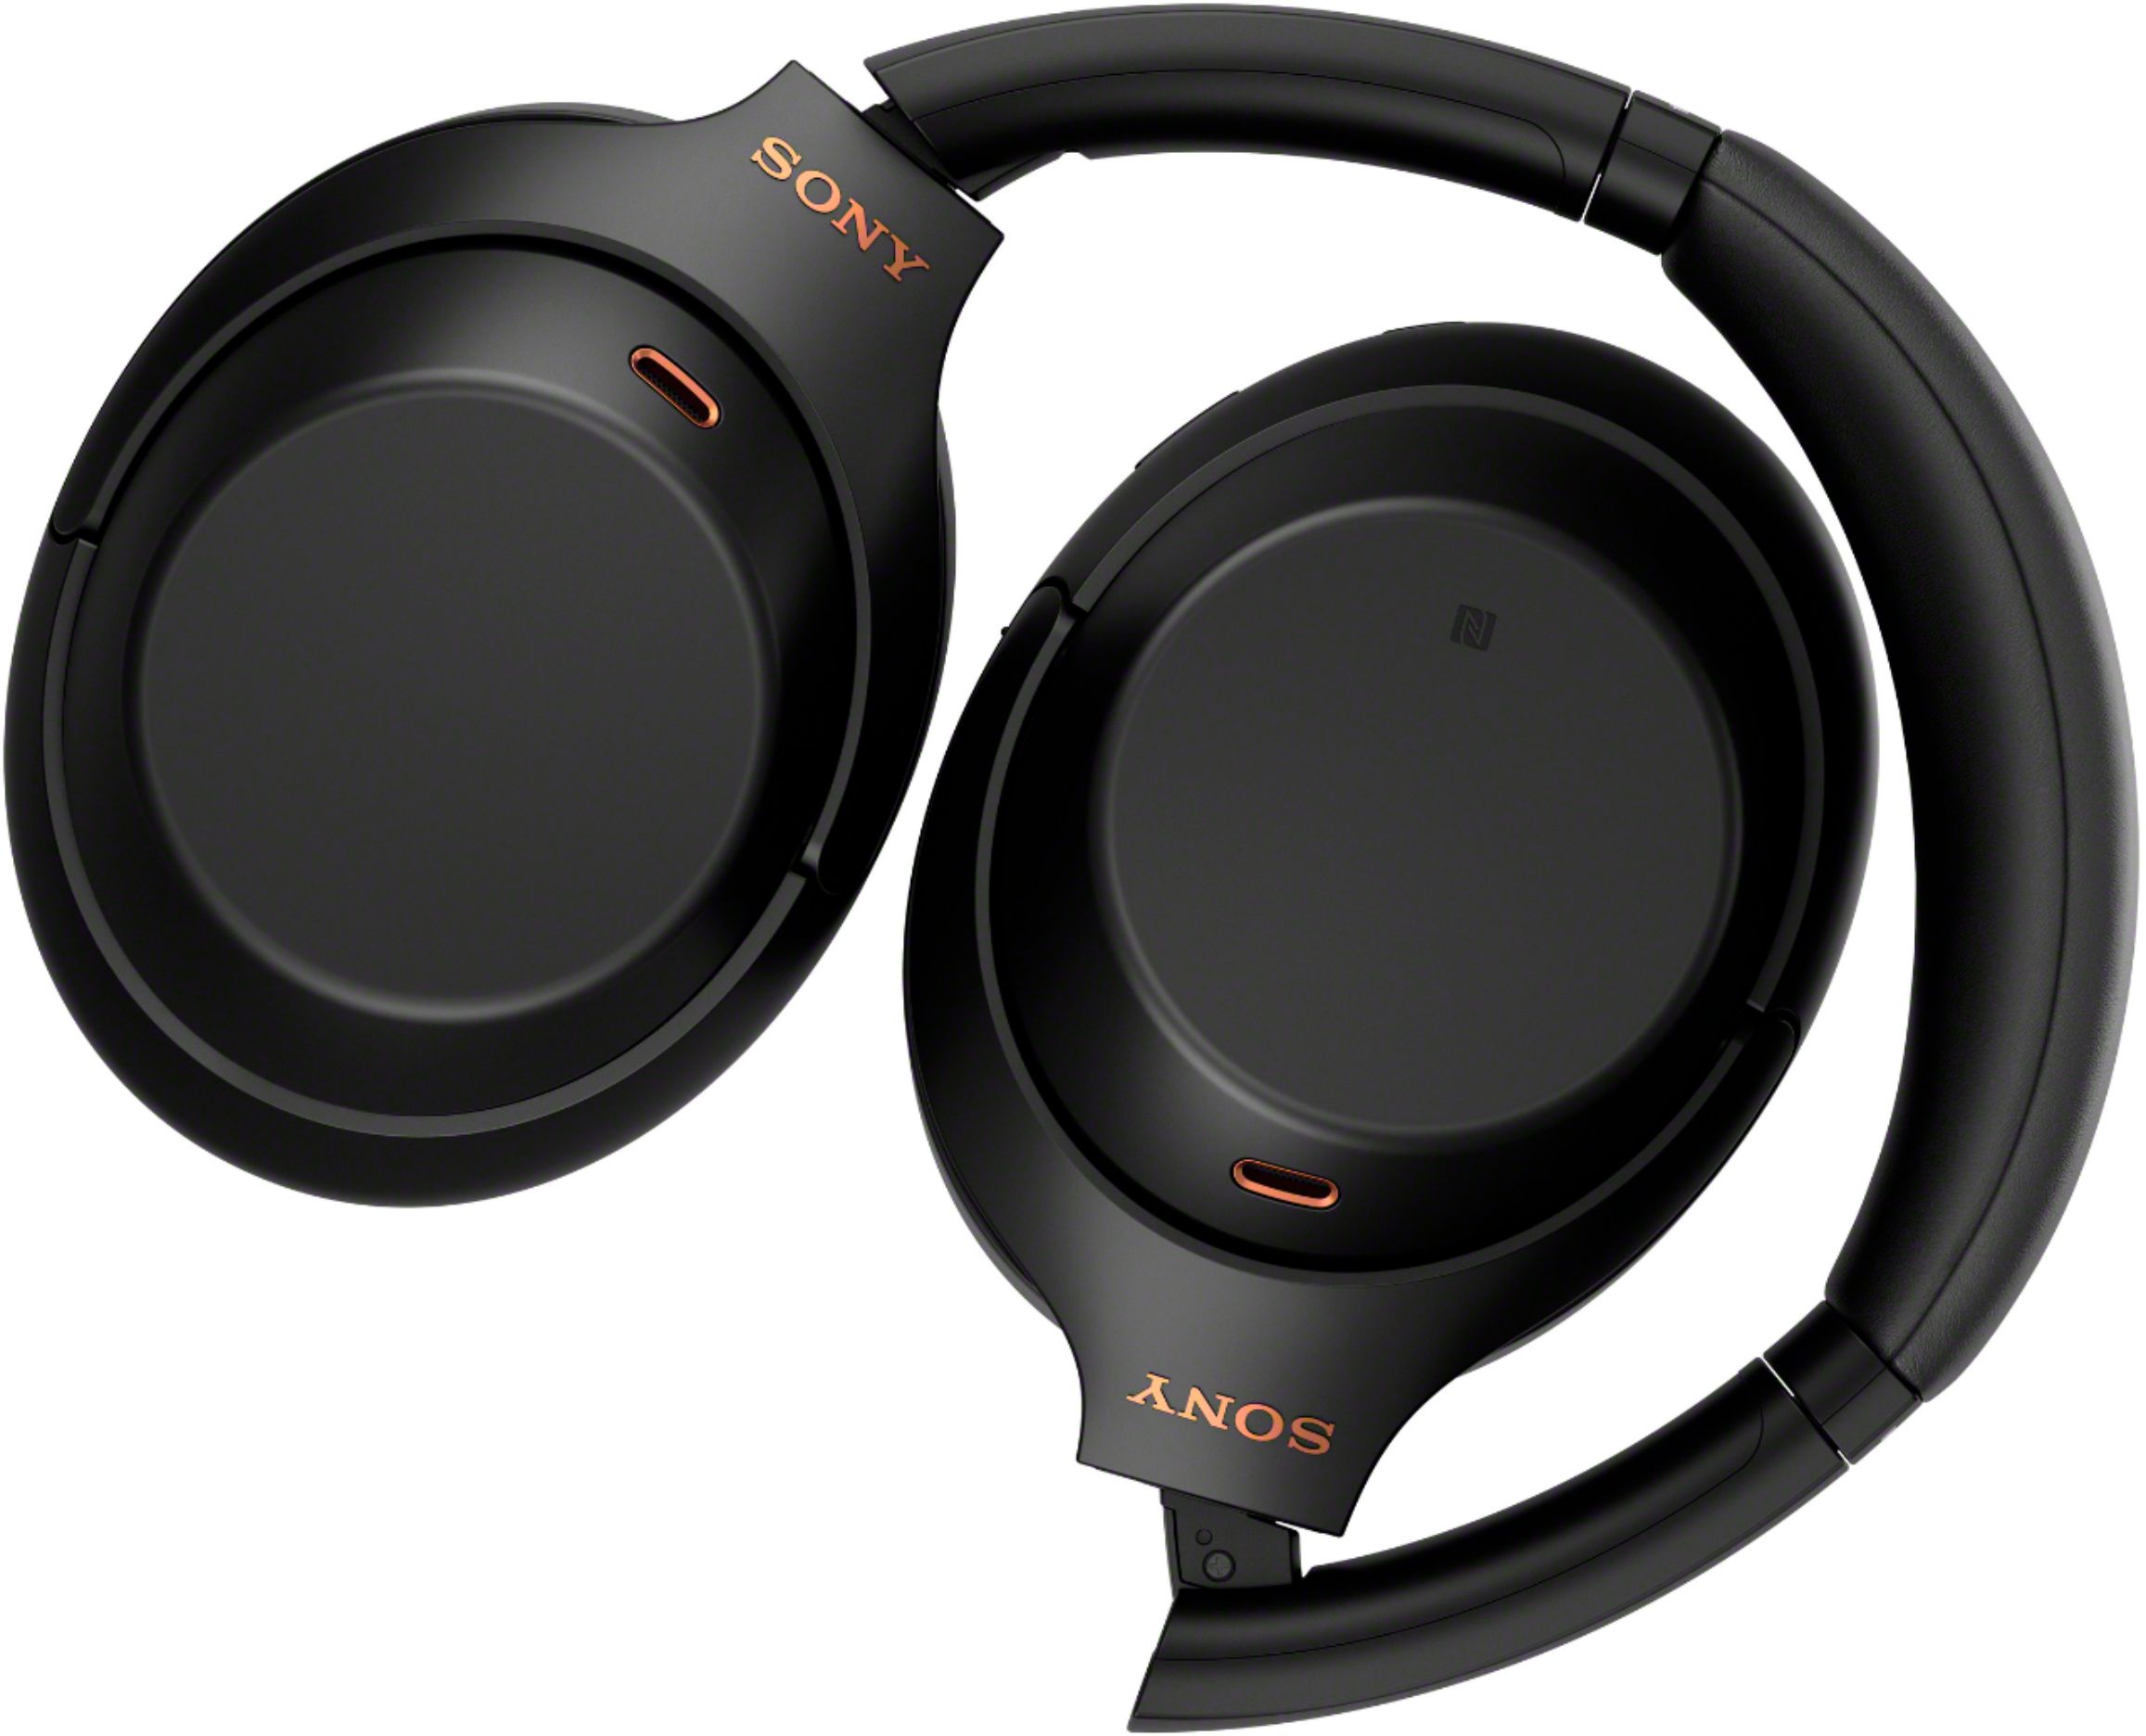 オーディオ機器 ヘッドフォン Sony WH-1000XM4 Wireless Noise-Cancelling Over-the-Ear Headphones Black  WH1000XM4/B - Best Buy